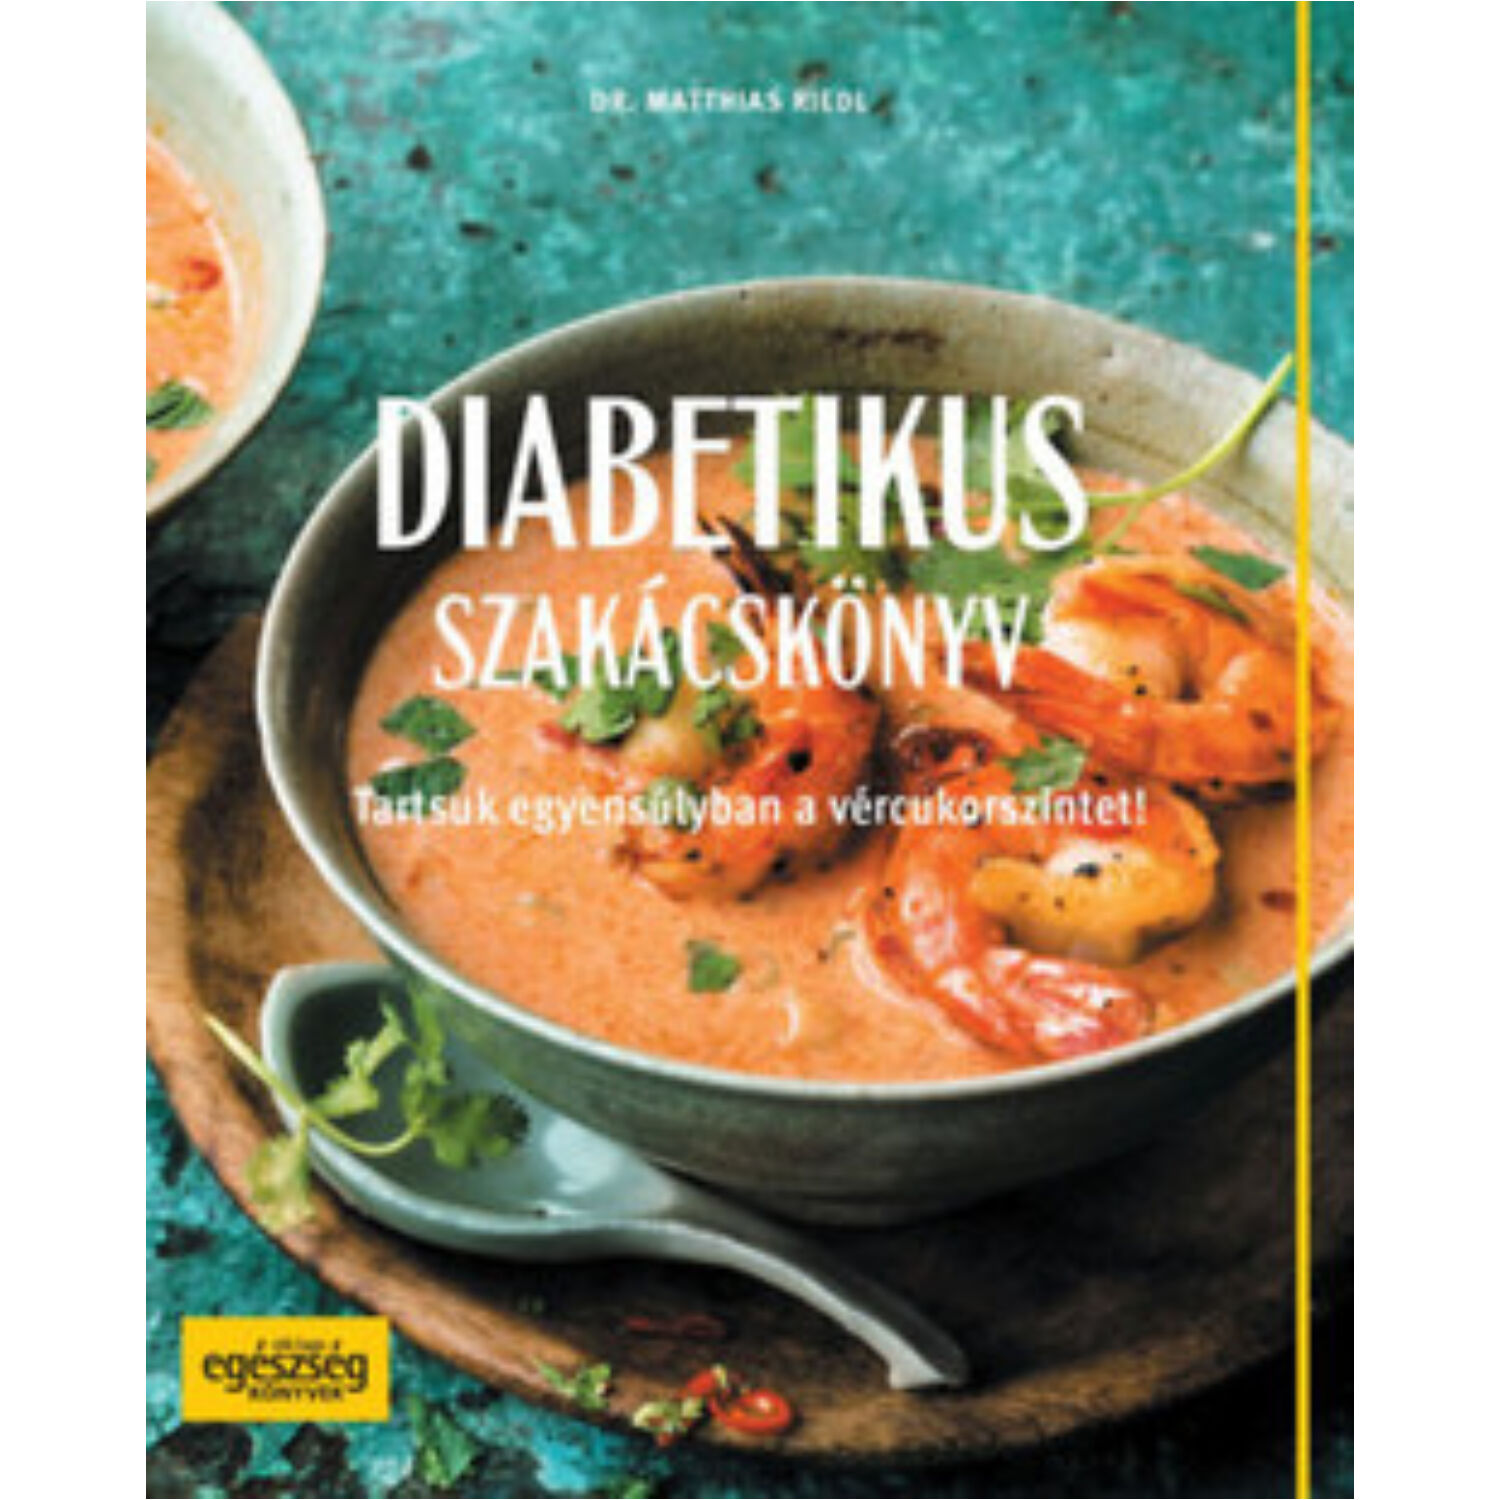 Diabetikus szakácskönyv